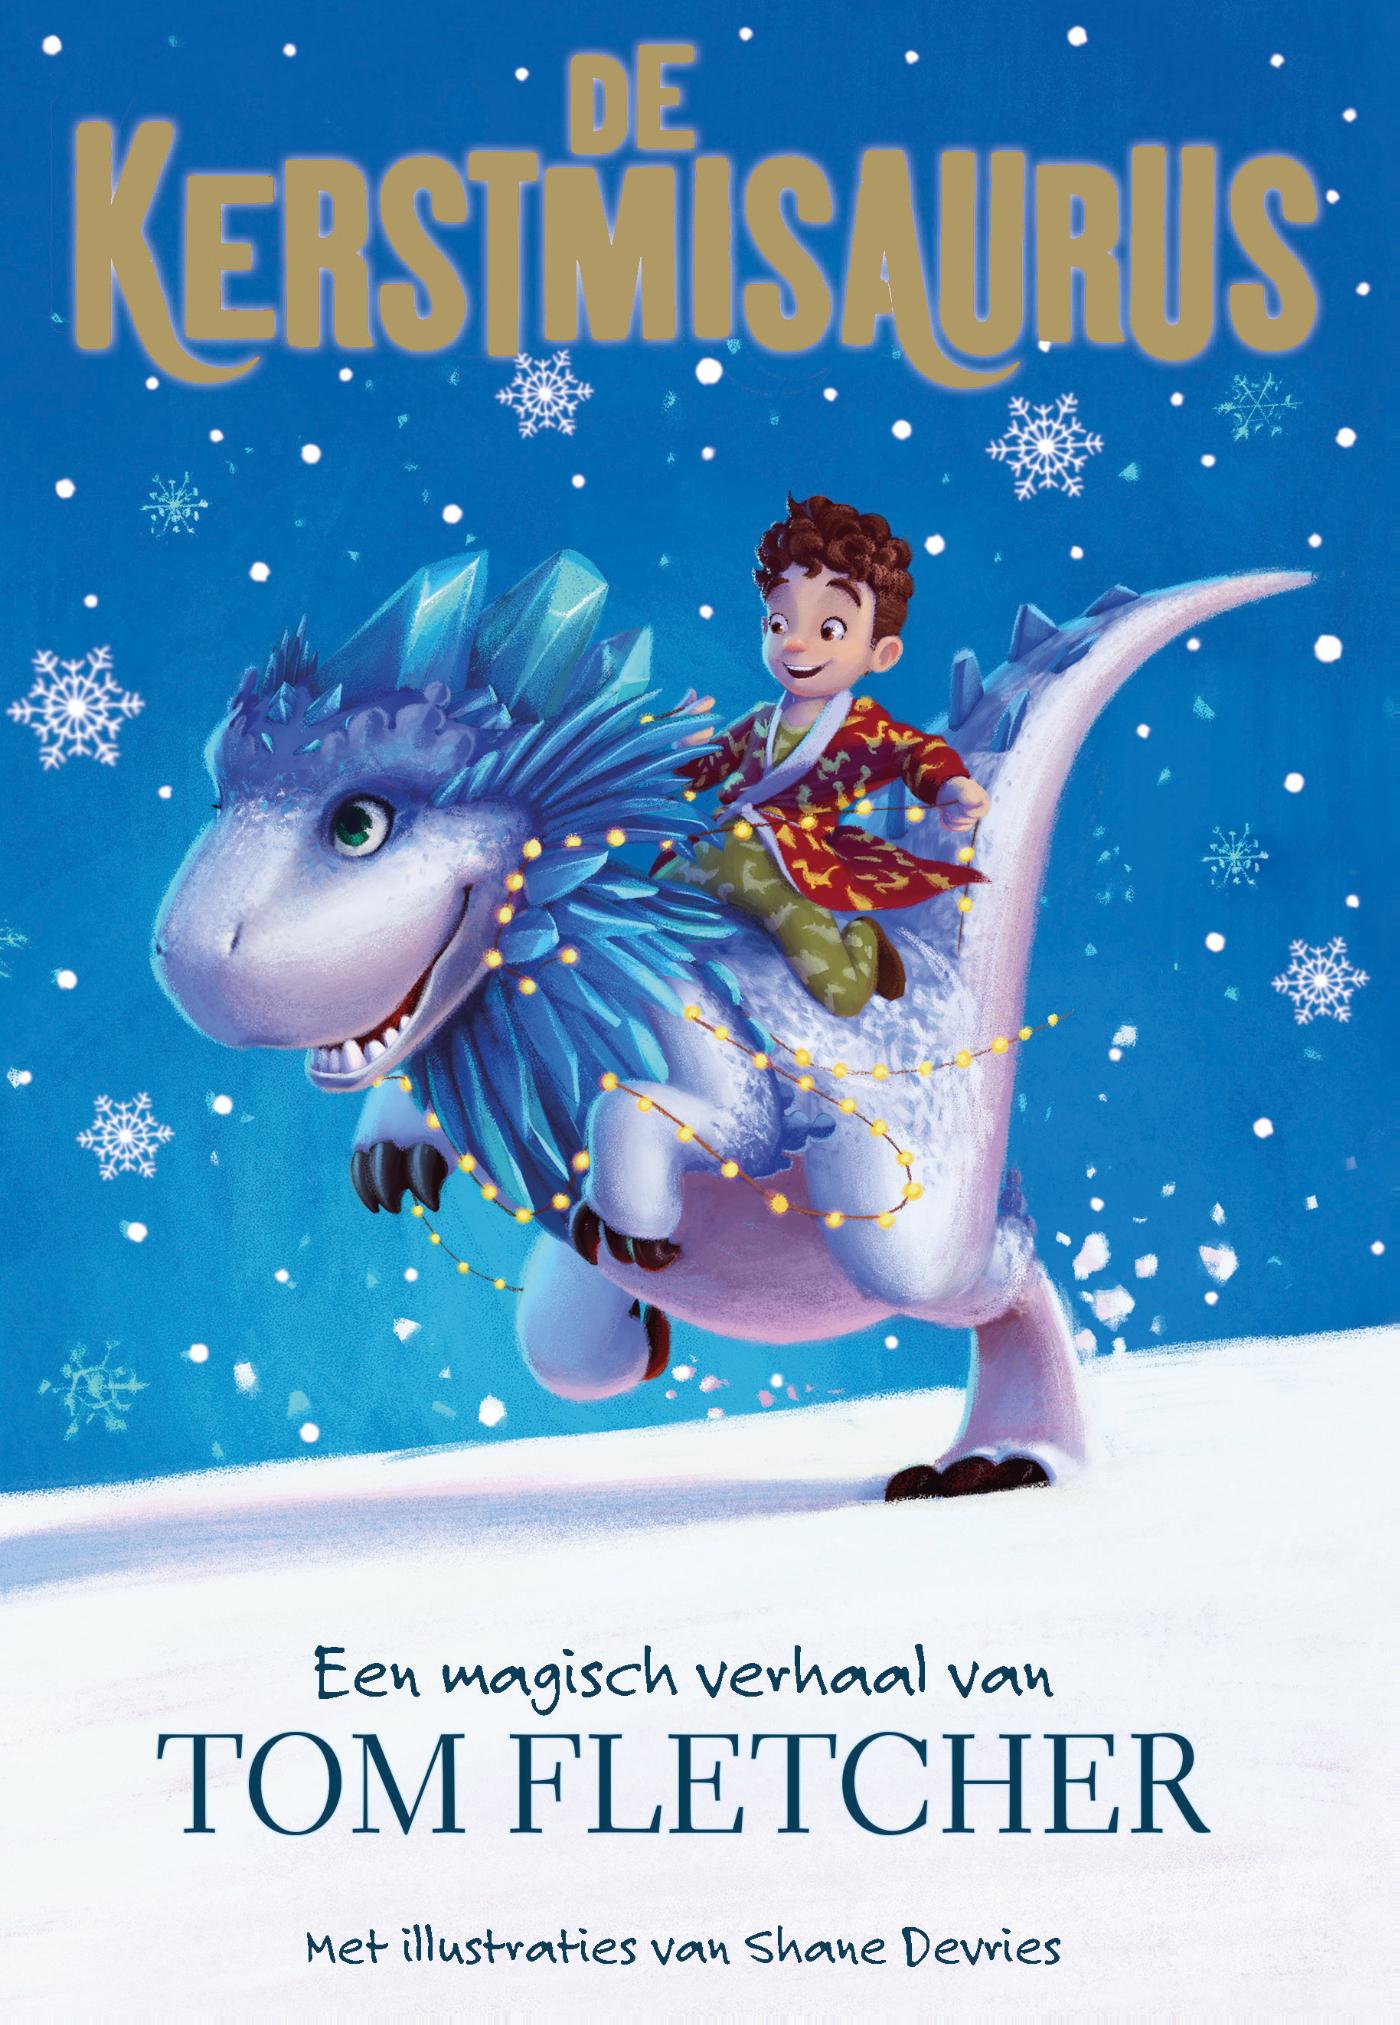 De Kerstmisaurus (Ebook)